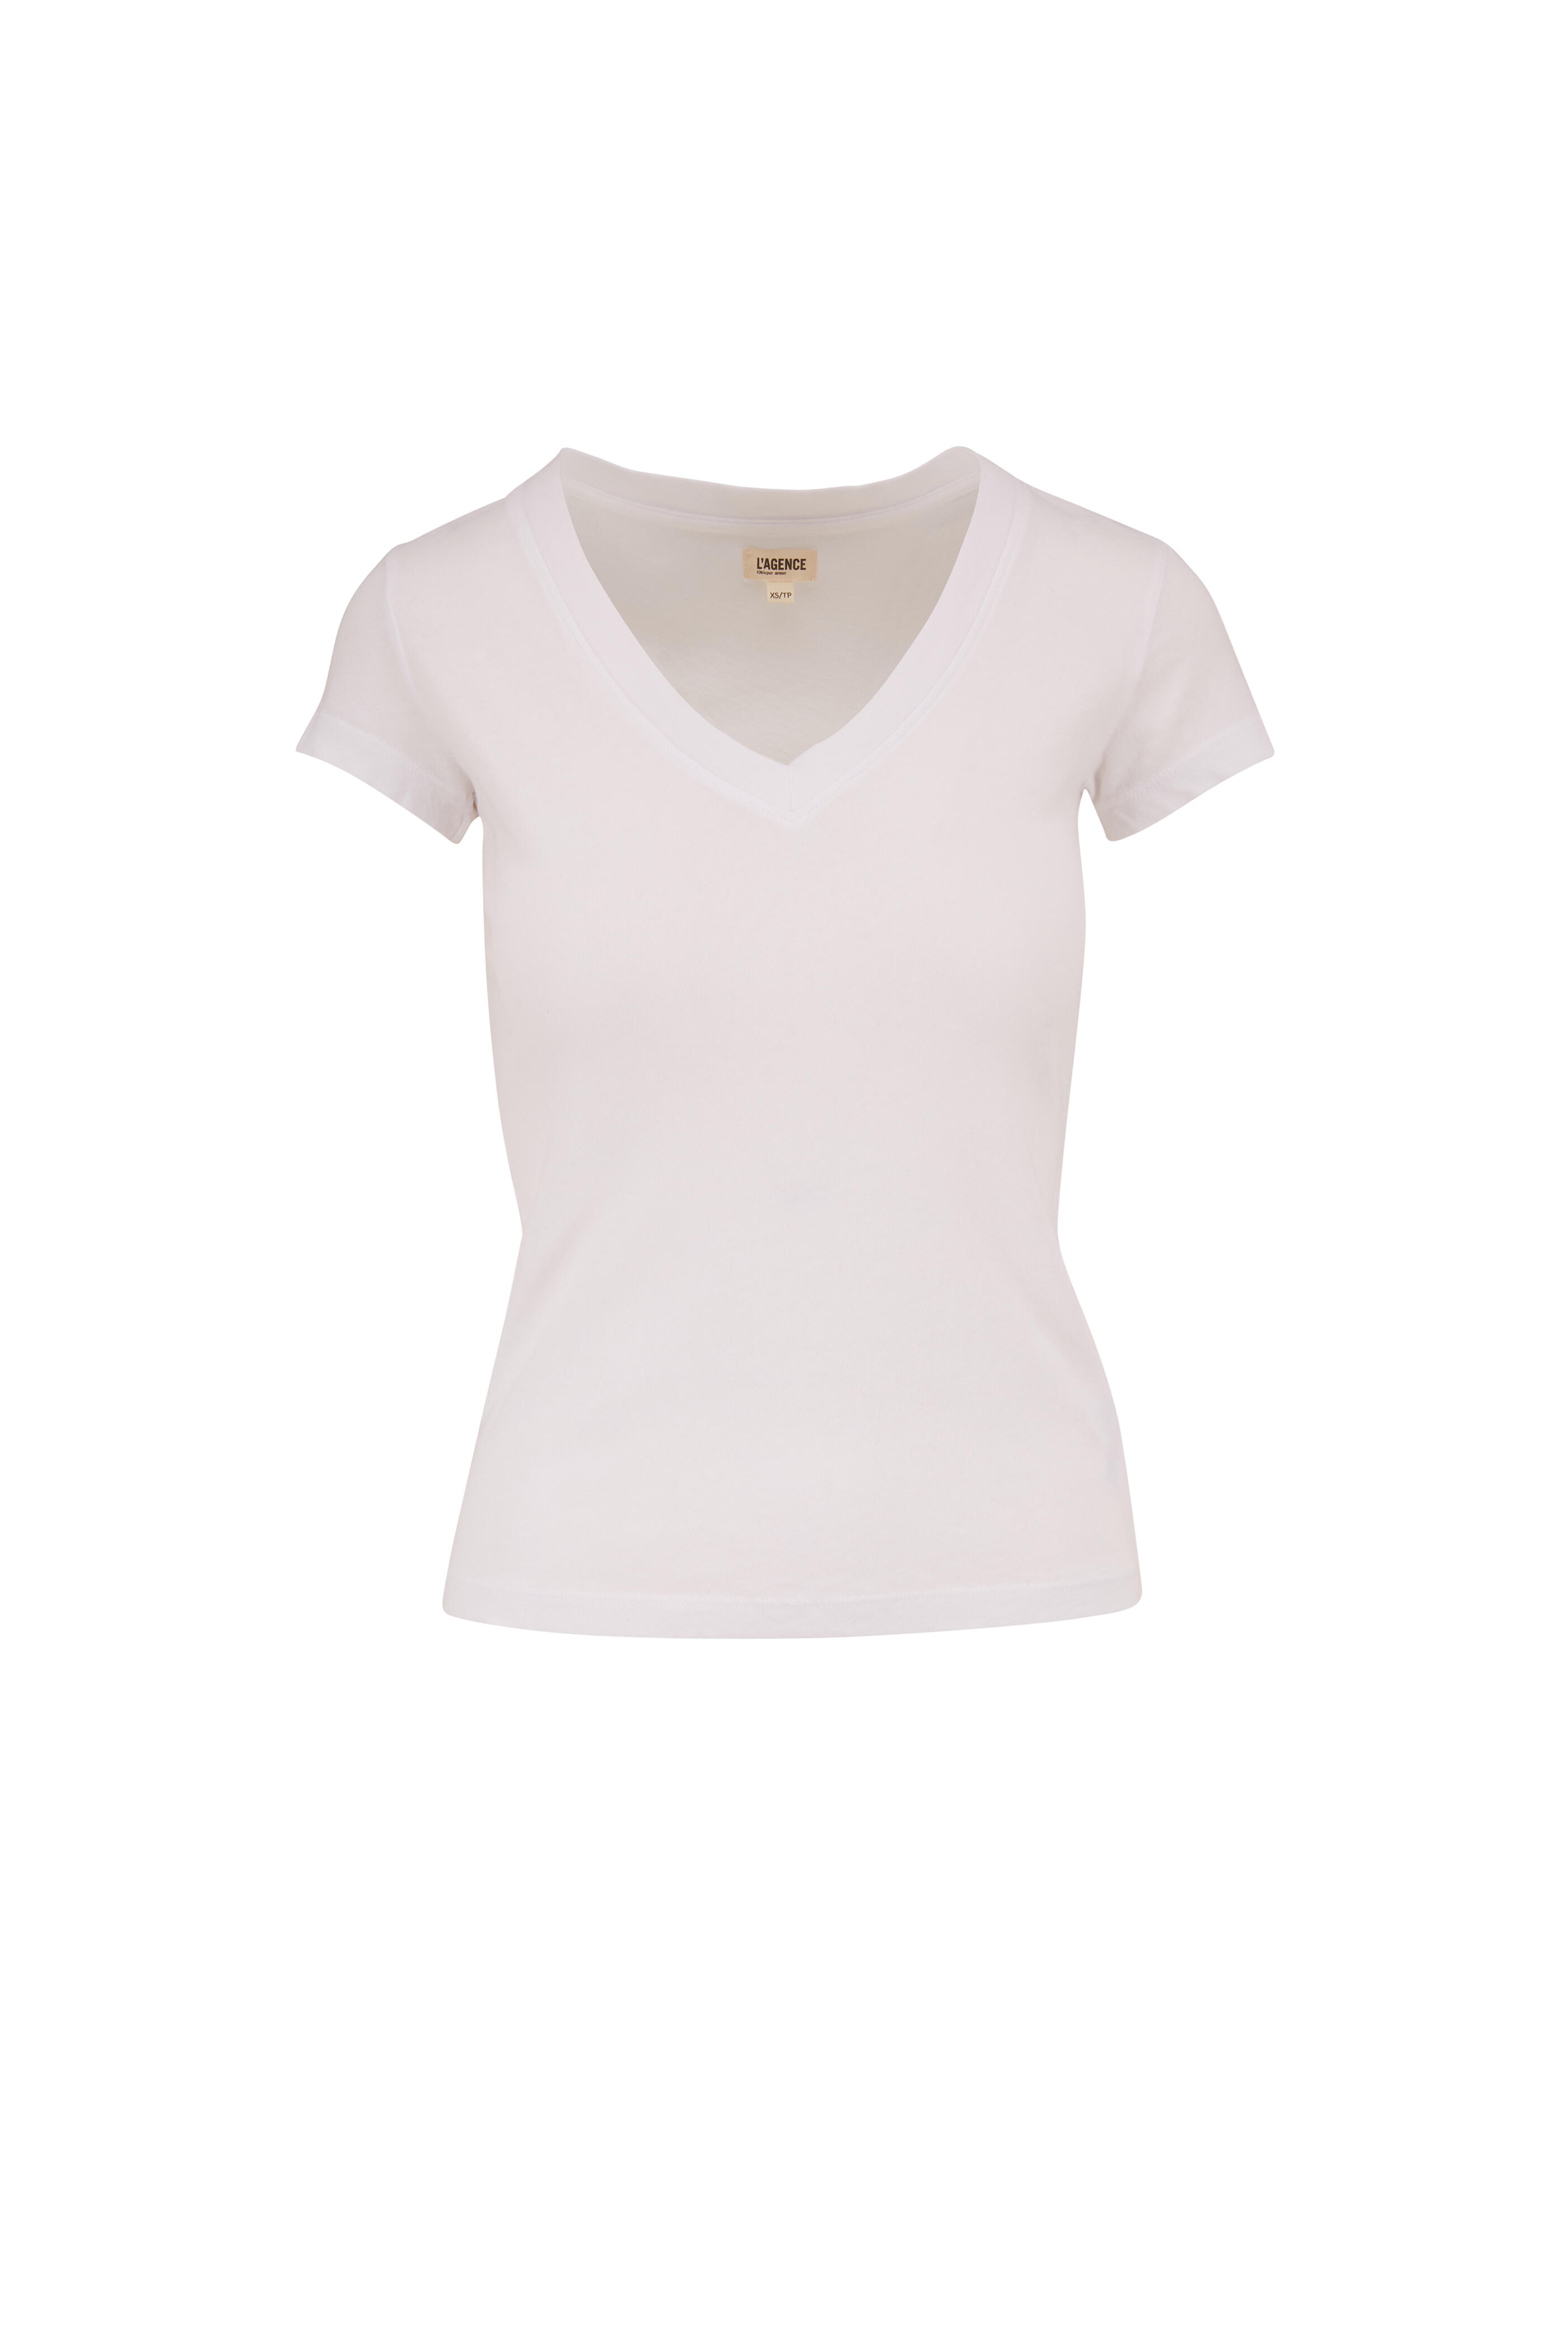 L\'Agence - Becca White V-Neck | Mitchell Stores T-Shirt